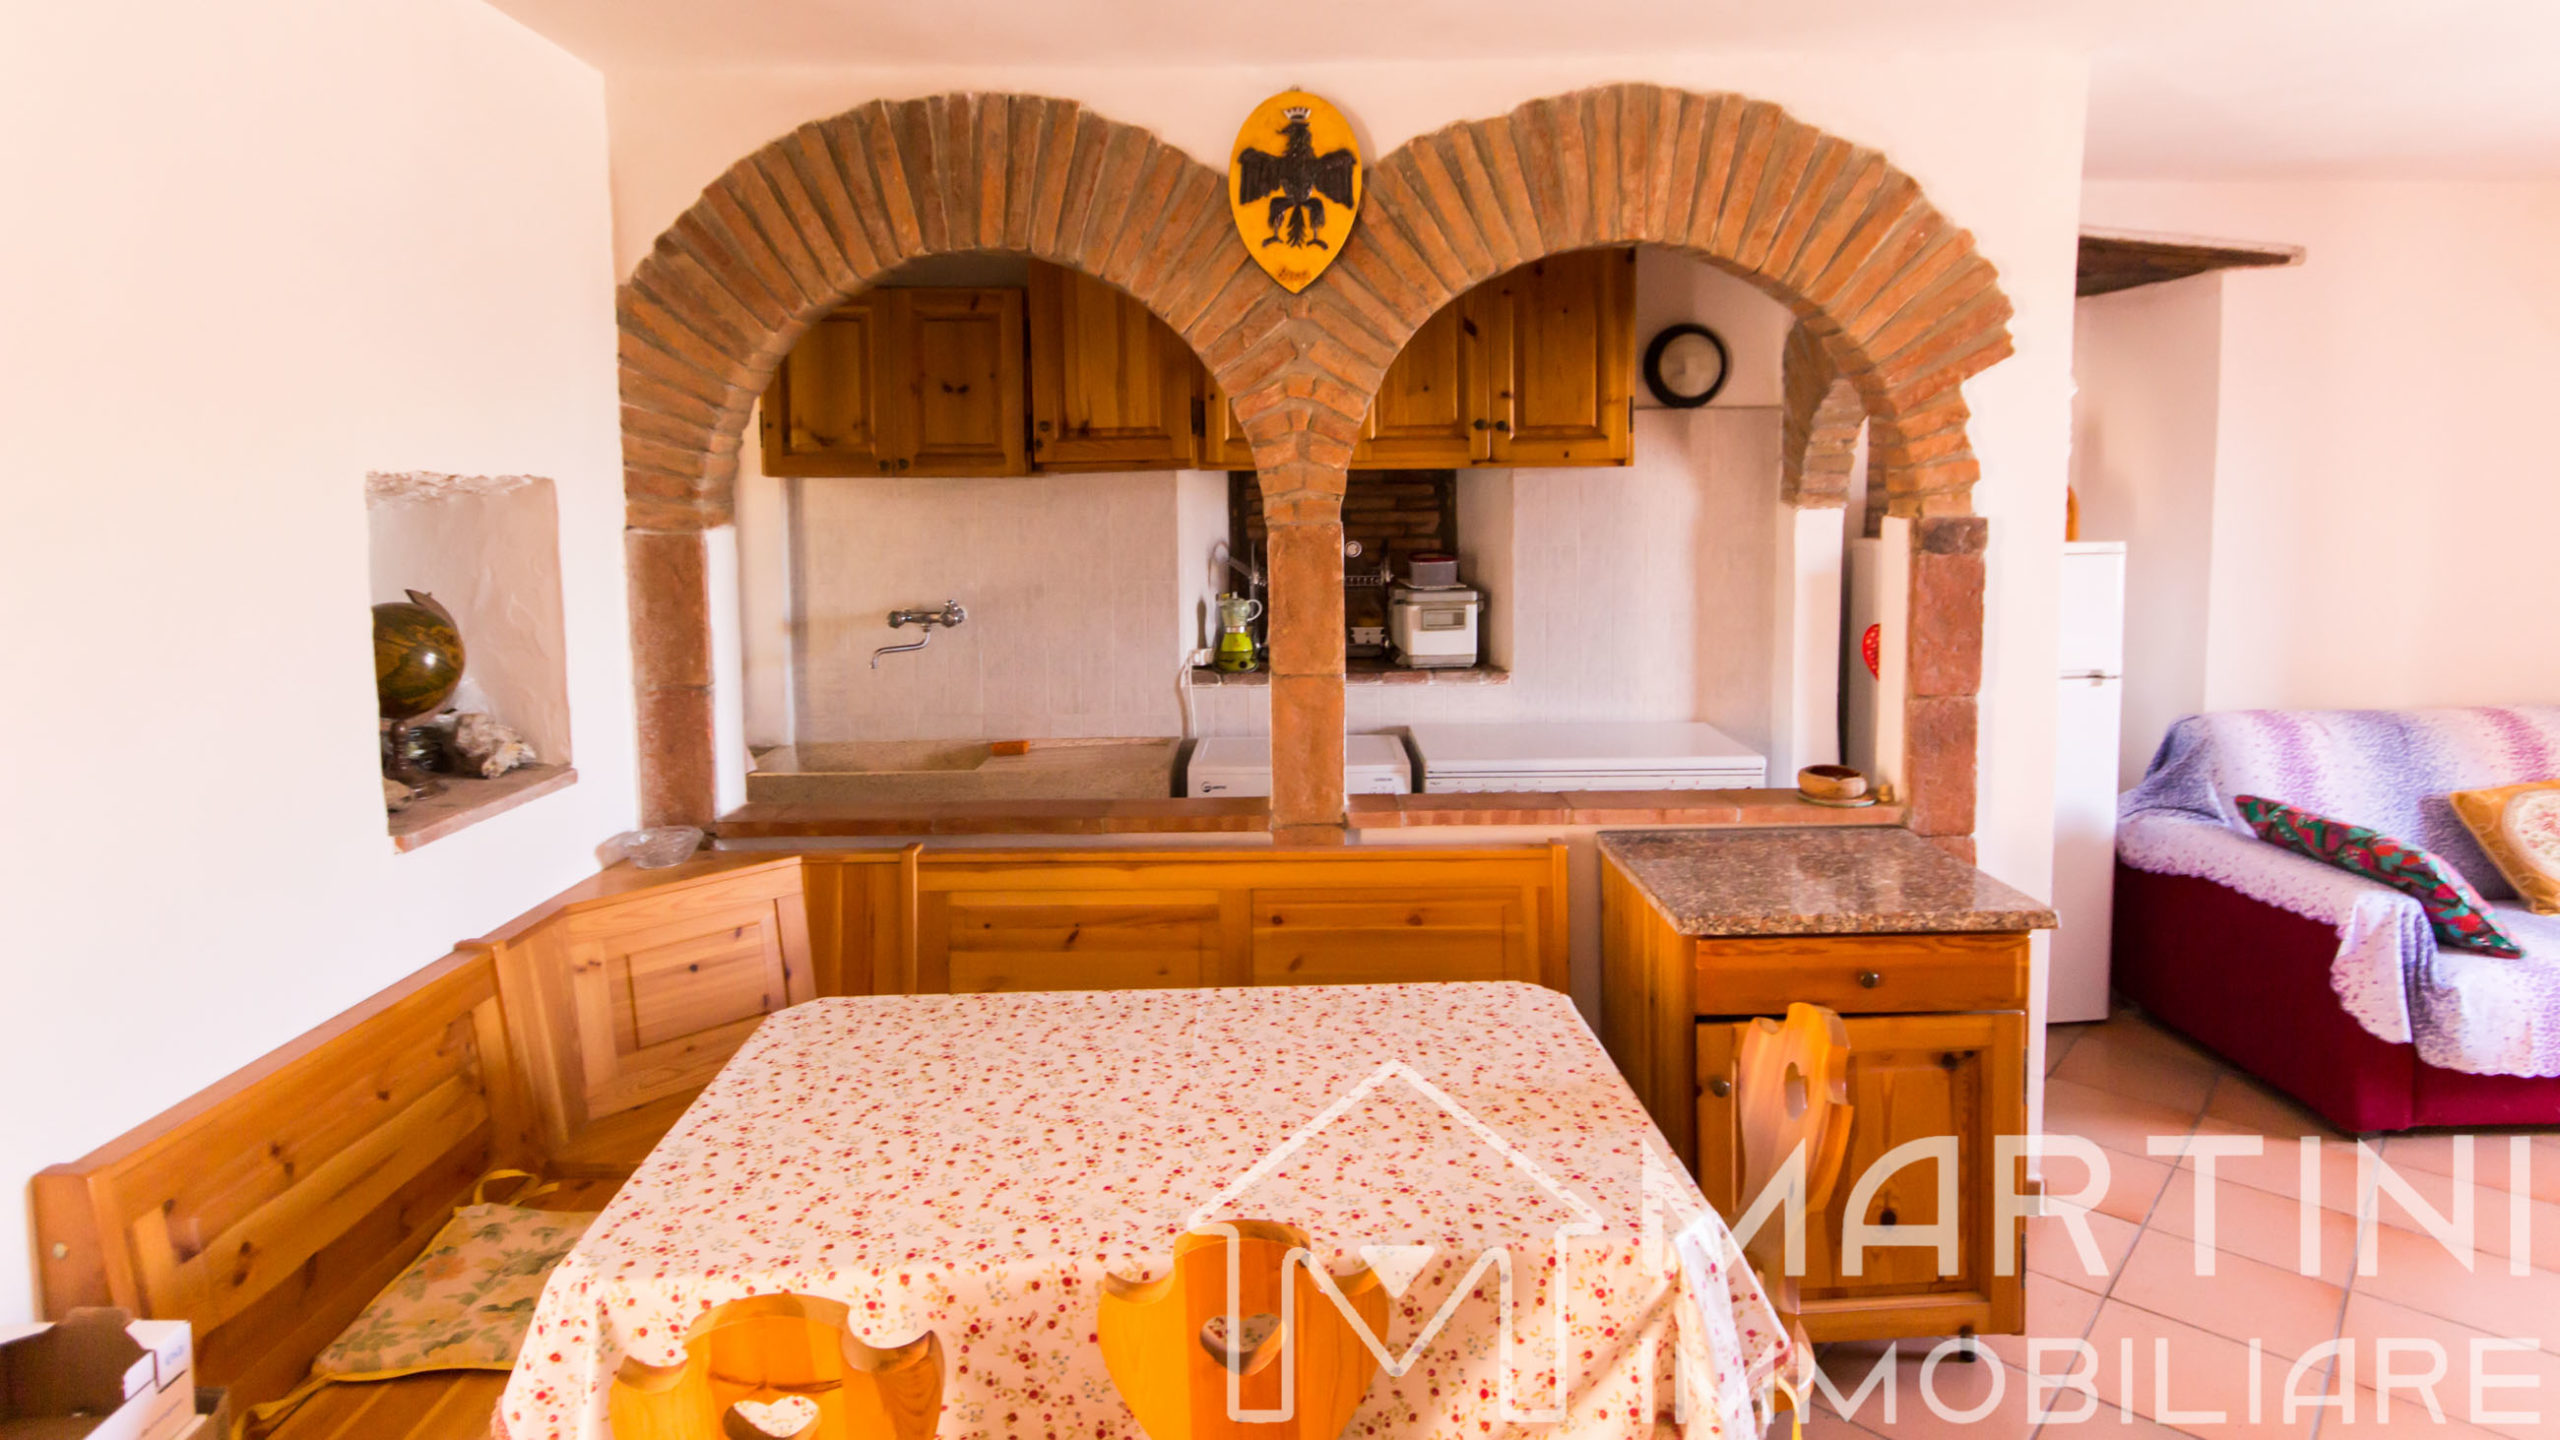 Casa in Stile Rustico Toscano – Ottime Rifiniture